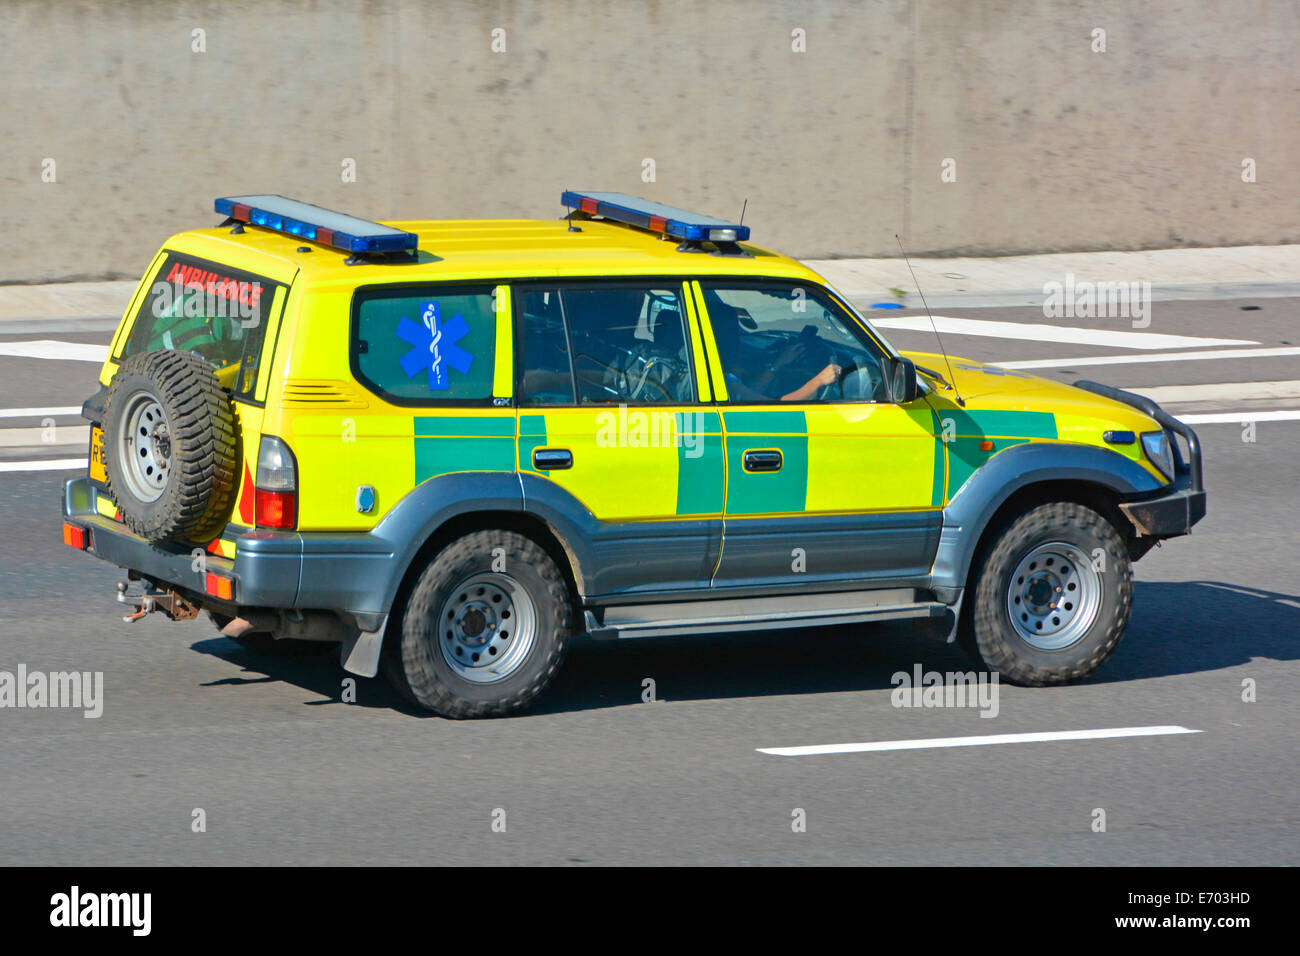 Battenburg Markierungen auf der Seite des Krankenwagens angenommen, privat zu sein Betrieb mit Reifen mit starkem Profil und Notlicht beim Fahren Entlang der britischen Autobahn Stockfoto